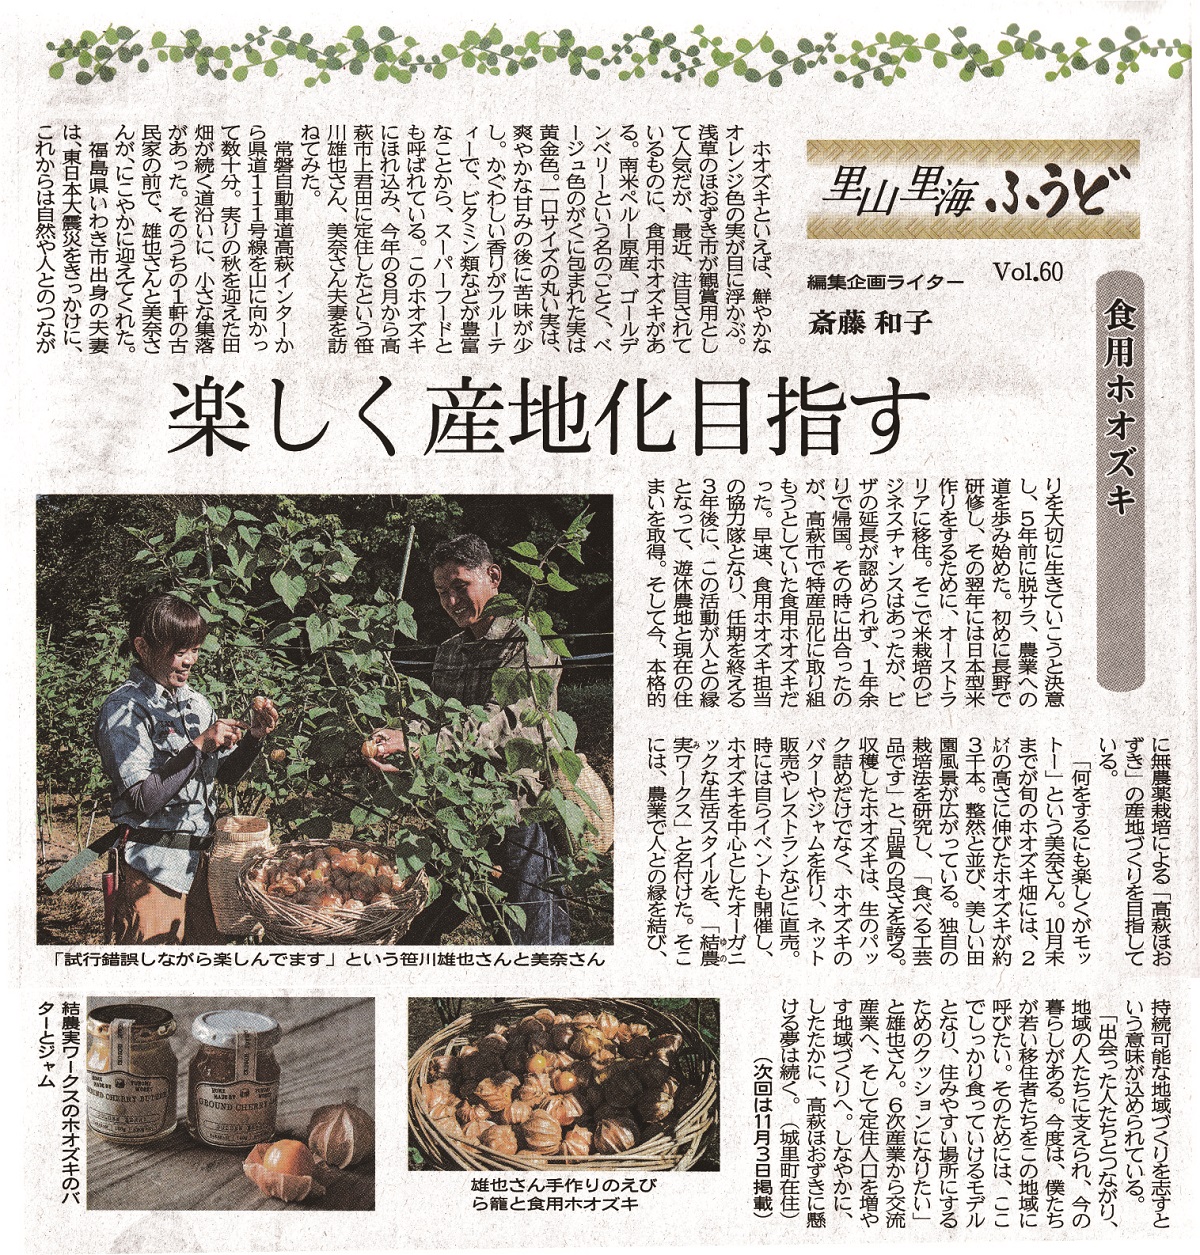 【茨城新聞掲載10/20】「高萩ほおずき」が茨城新聞に掲載されました。